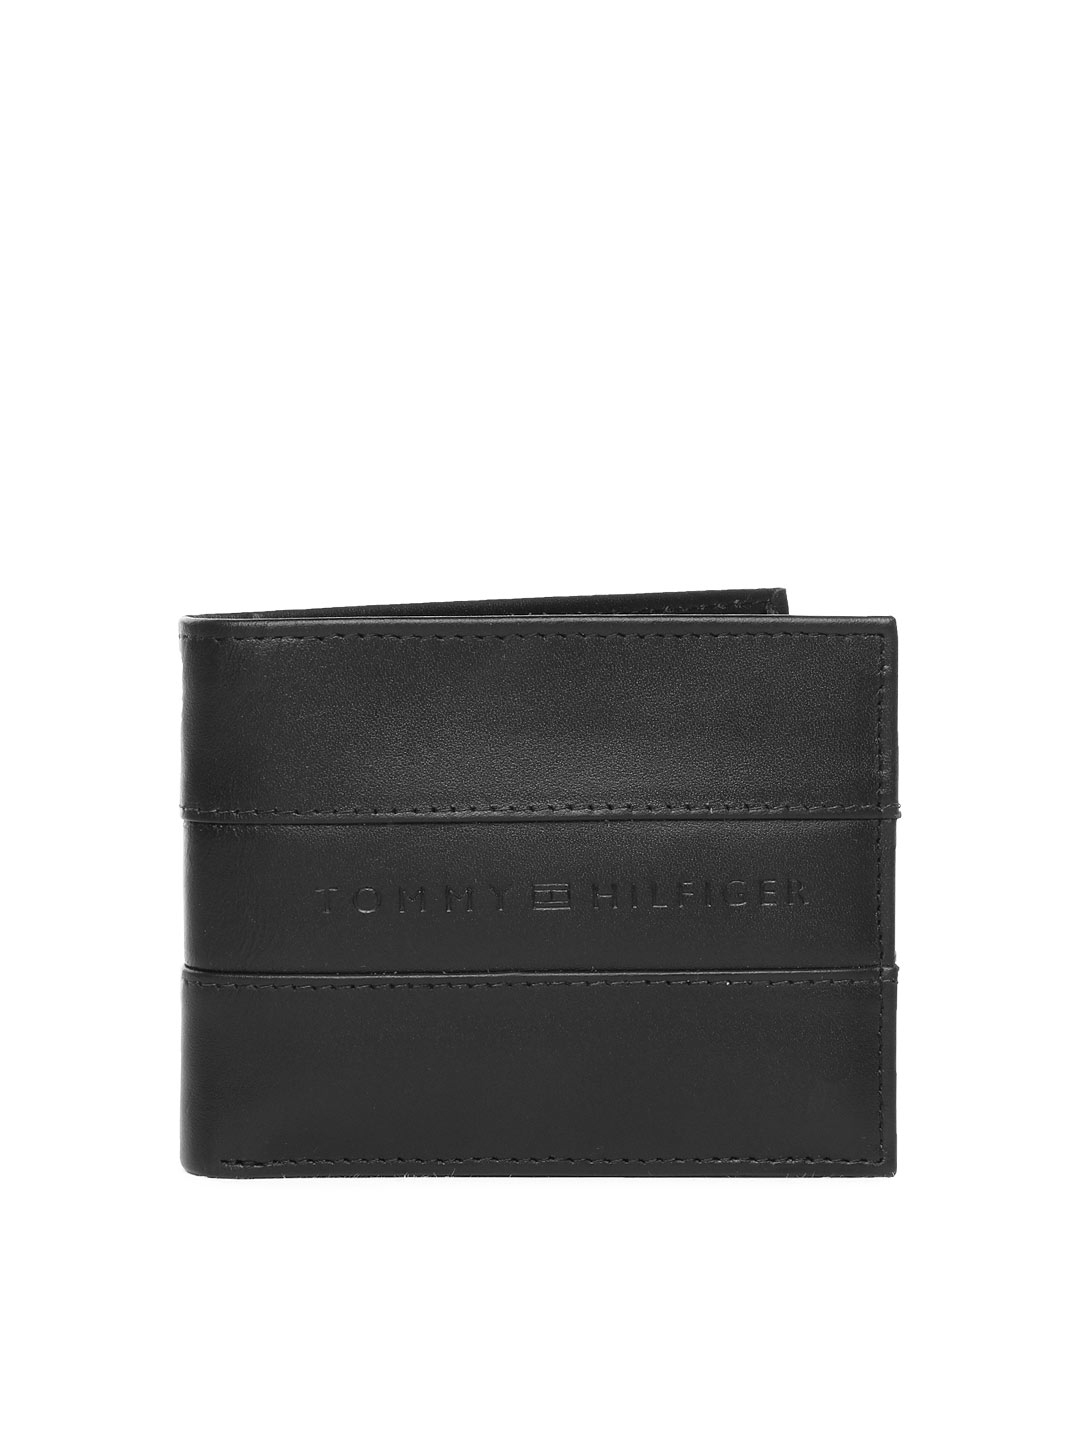 Buy Tommy Hilfiger Men Black Leather Wallet - Wallets for Men 601774 ...